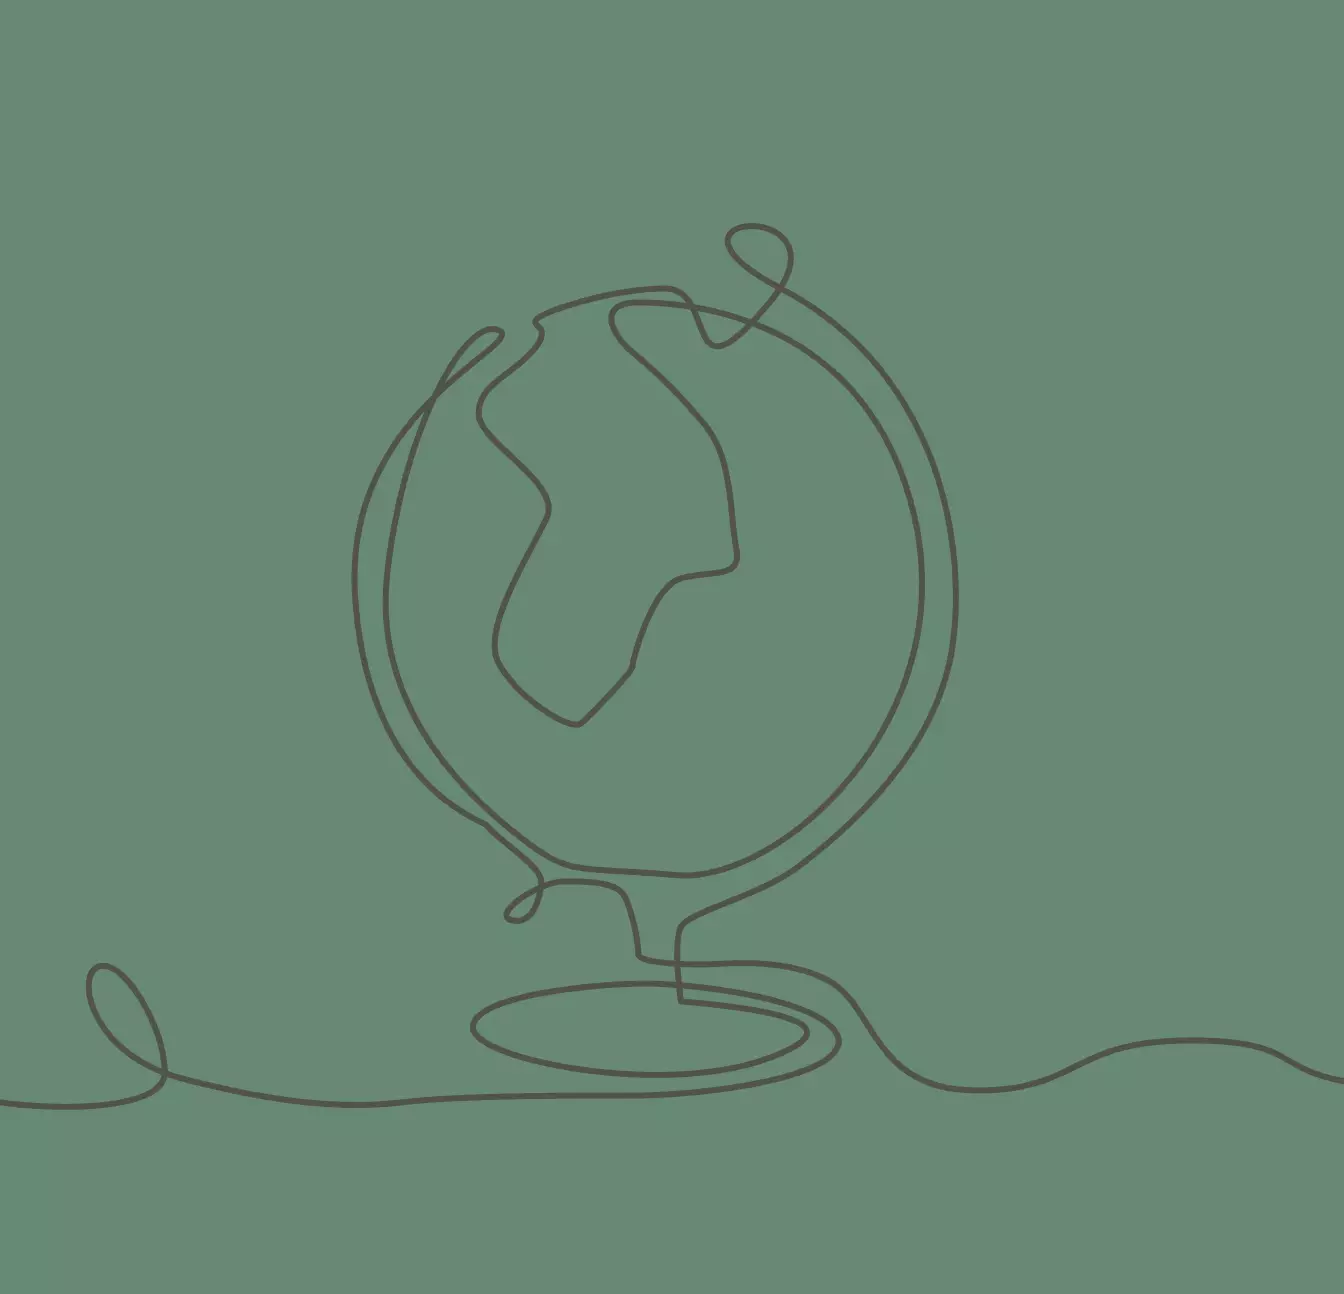 Globus, illustriert als One-Liner